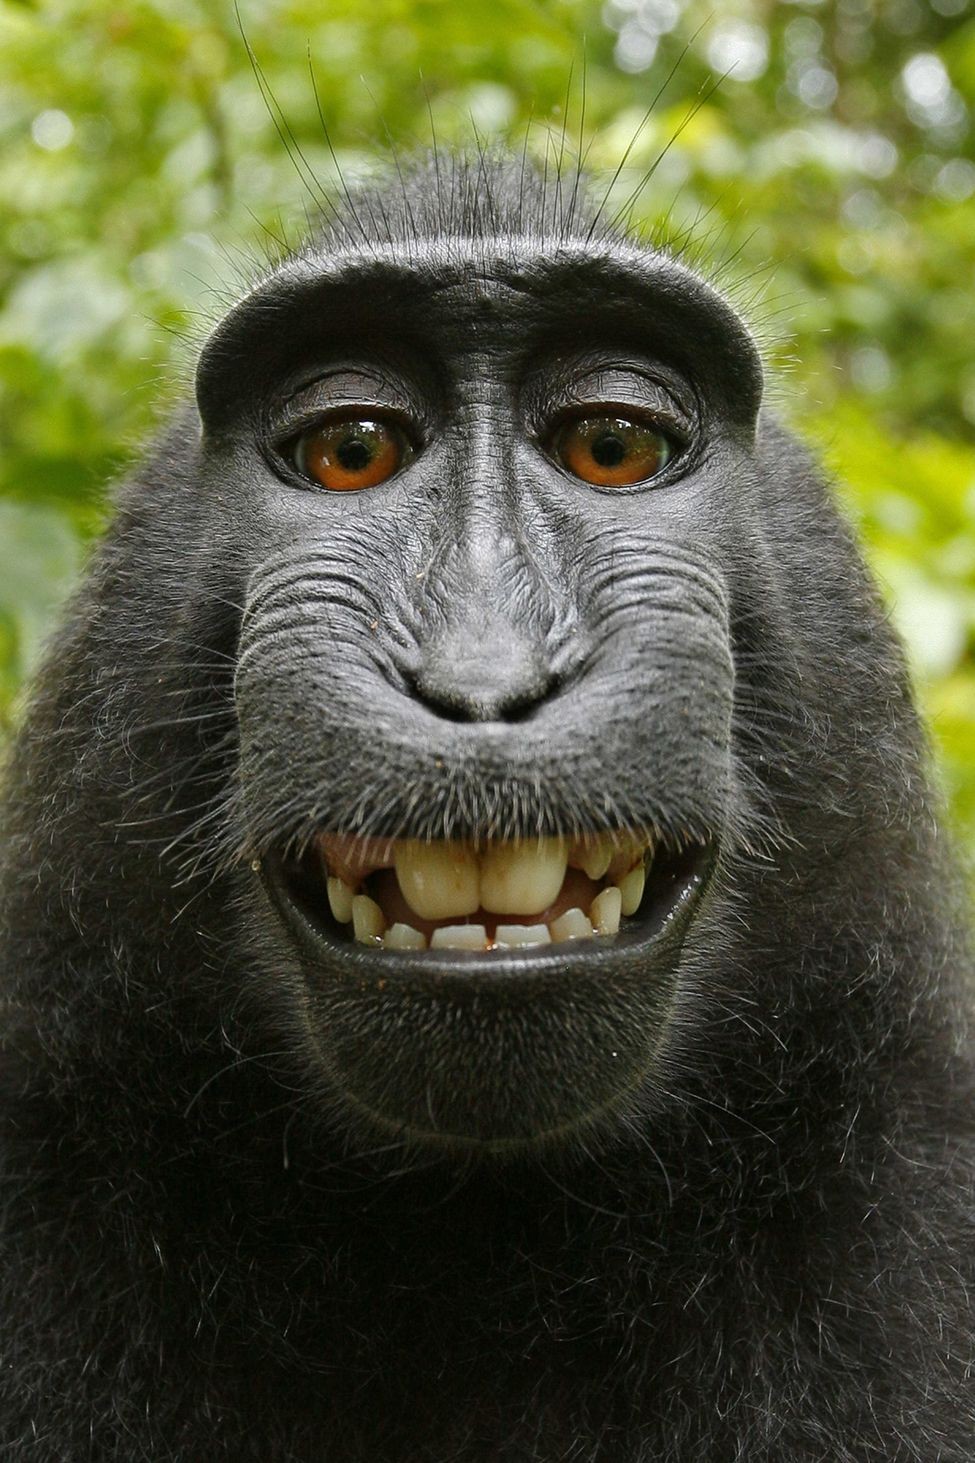 摄影师衰被抢相机 美著作权局:猴子自拍照没有著作权